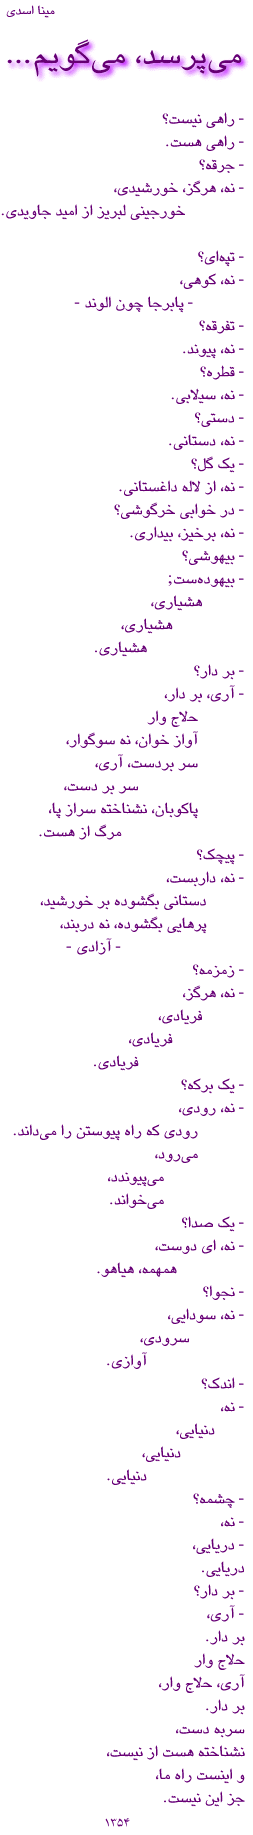 A poem by Meena Asadi